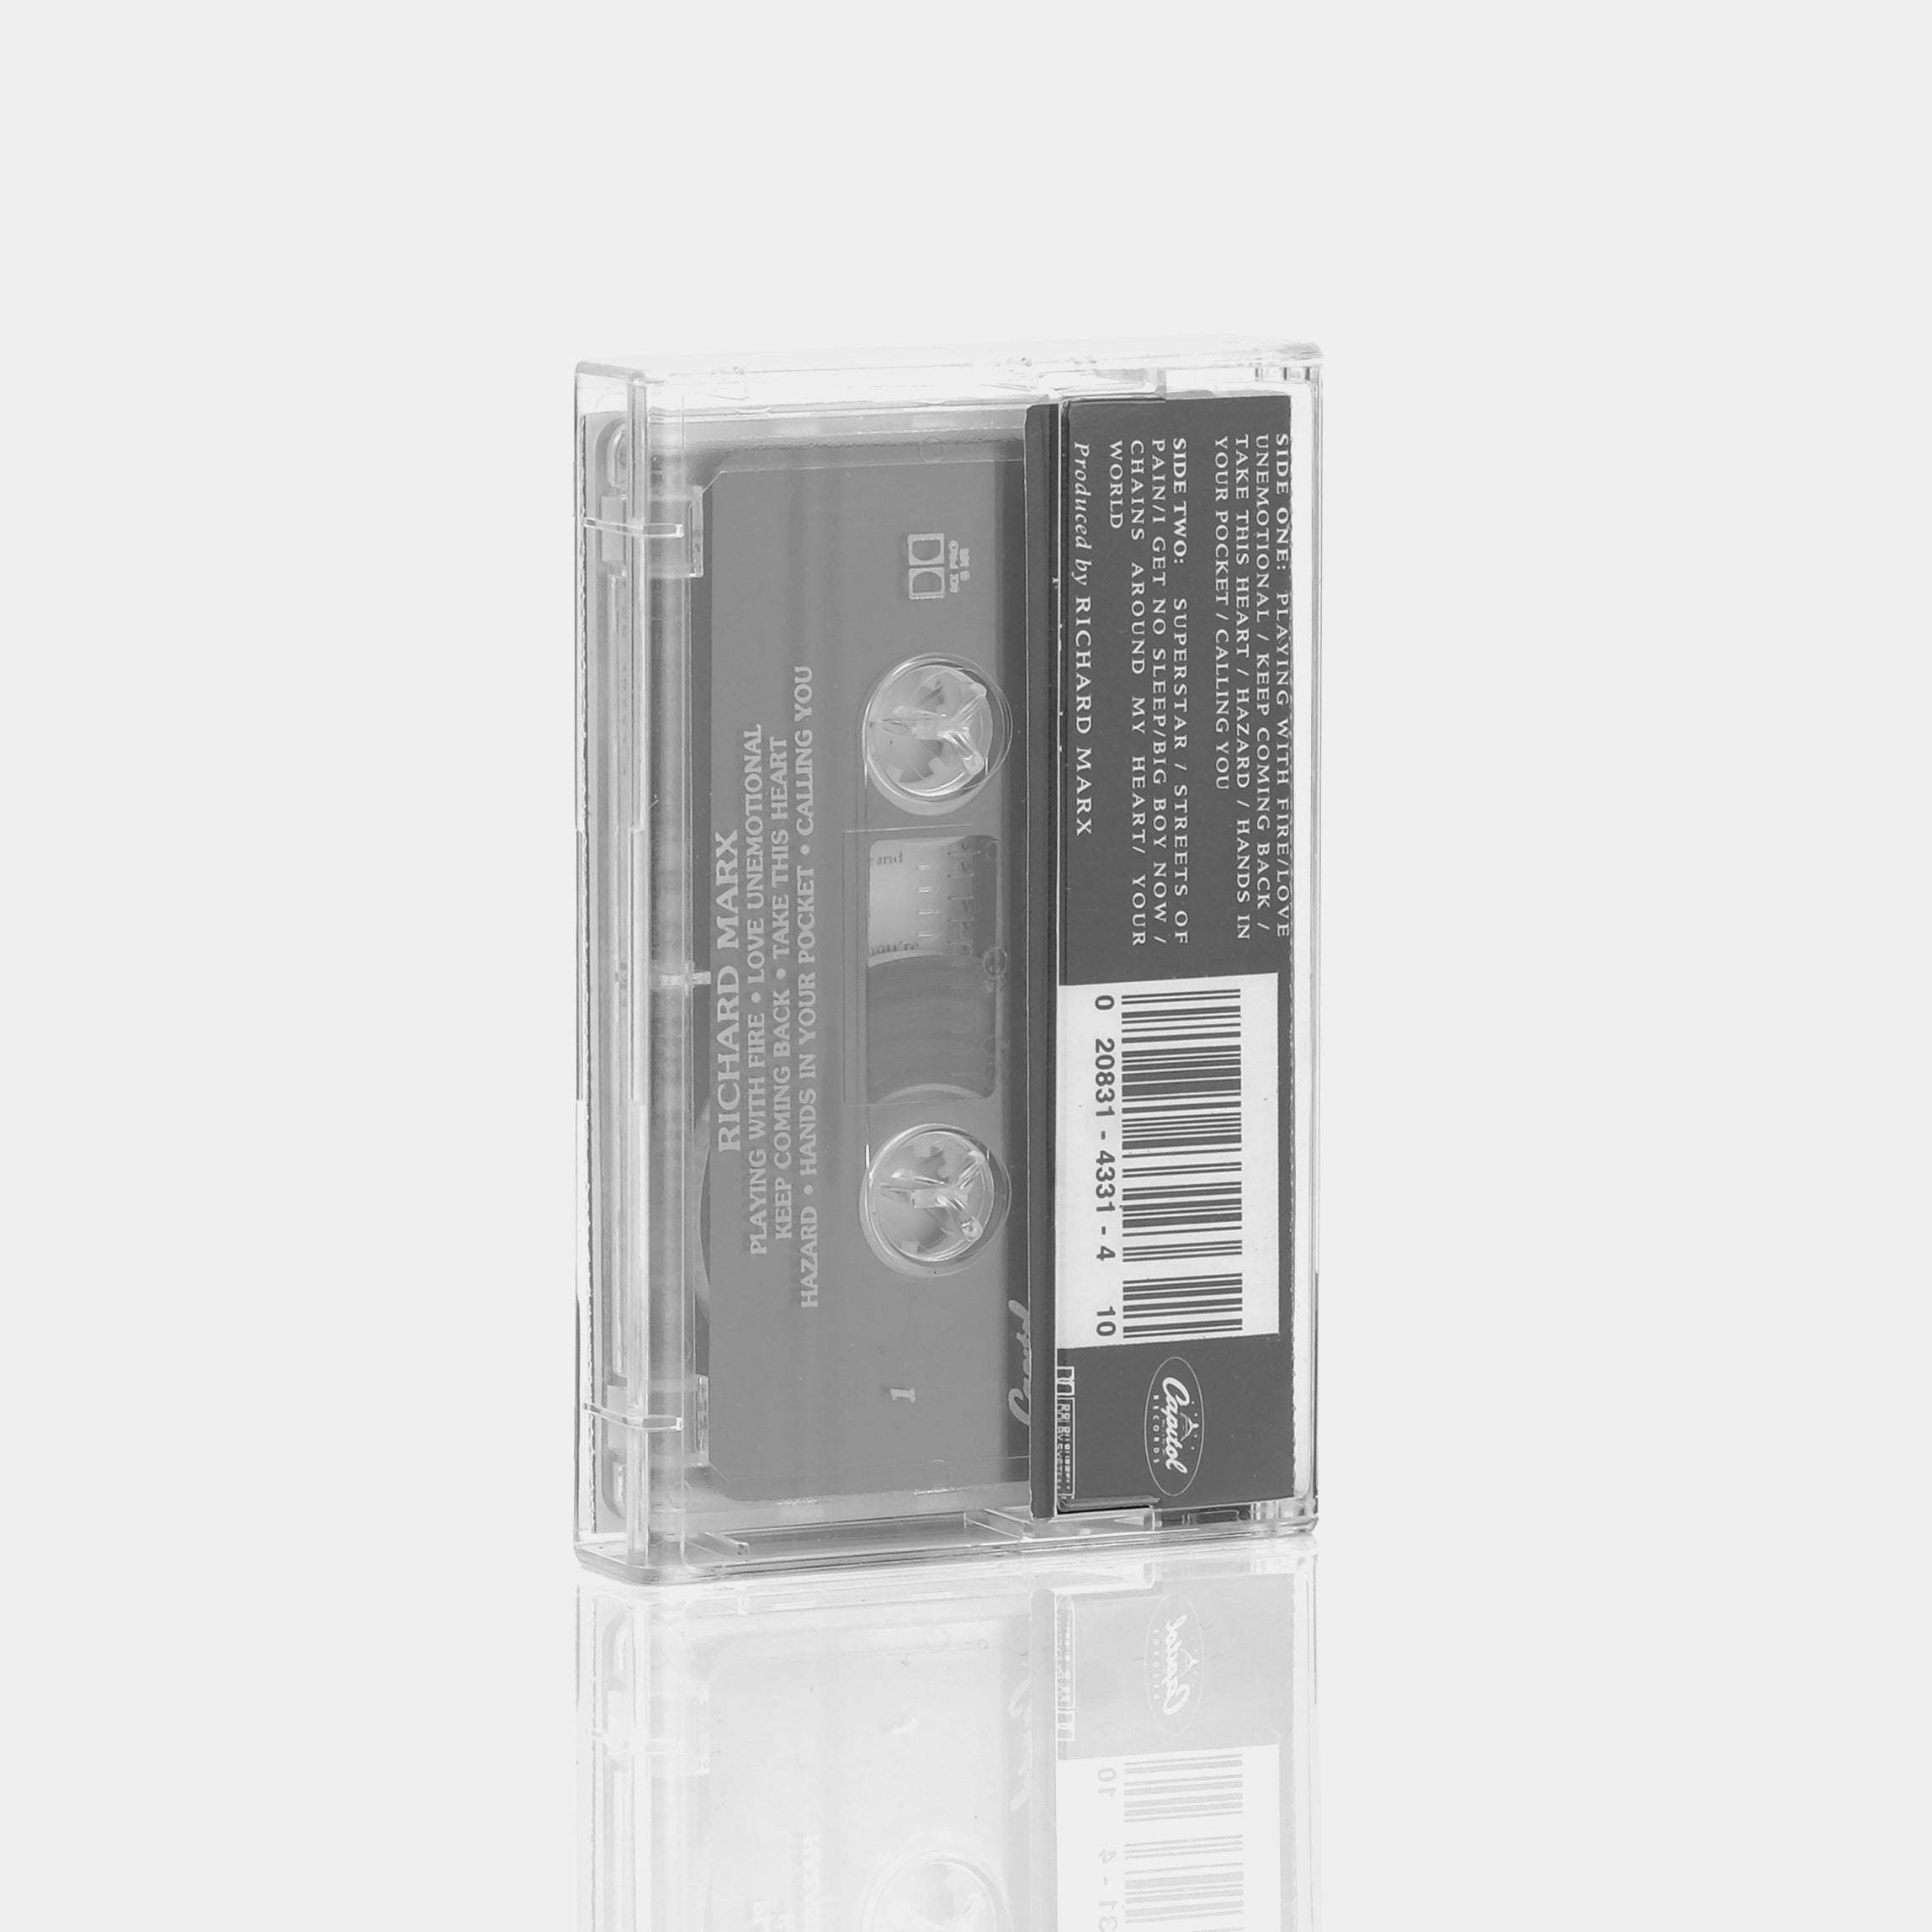 Richard Marx - Rush Street Cassette Tape